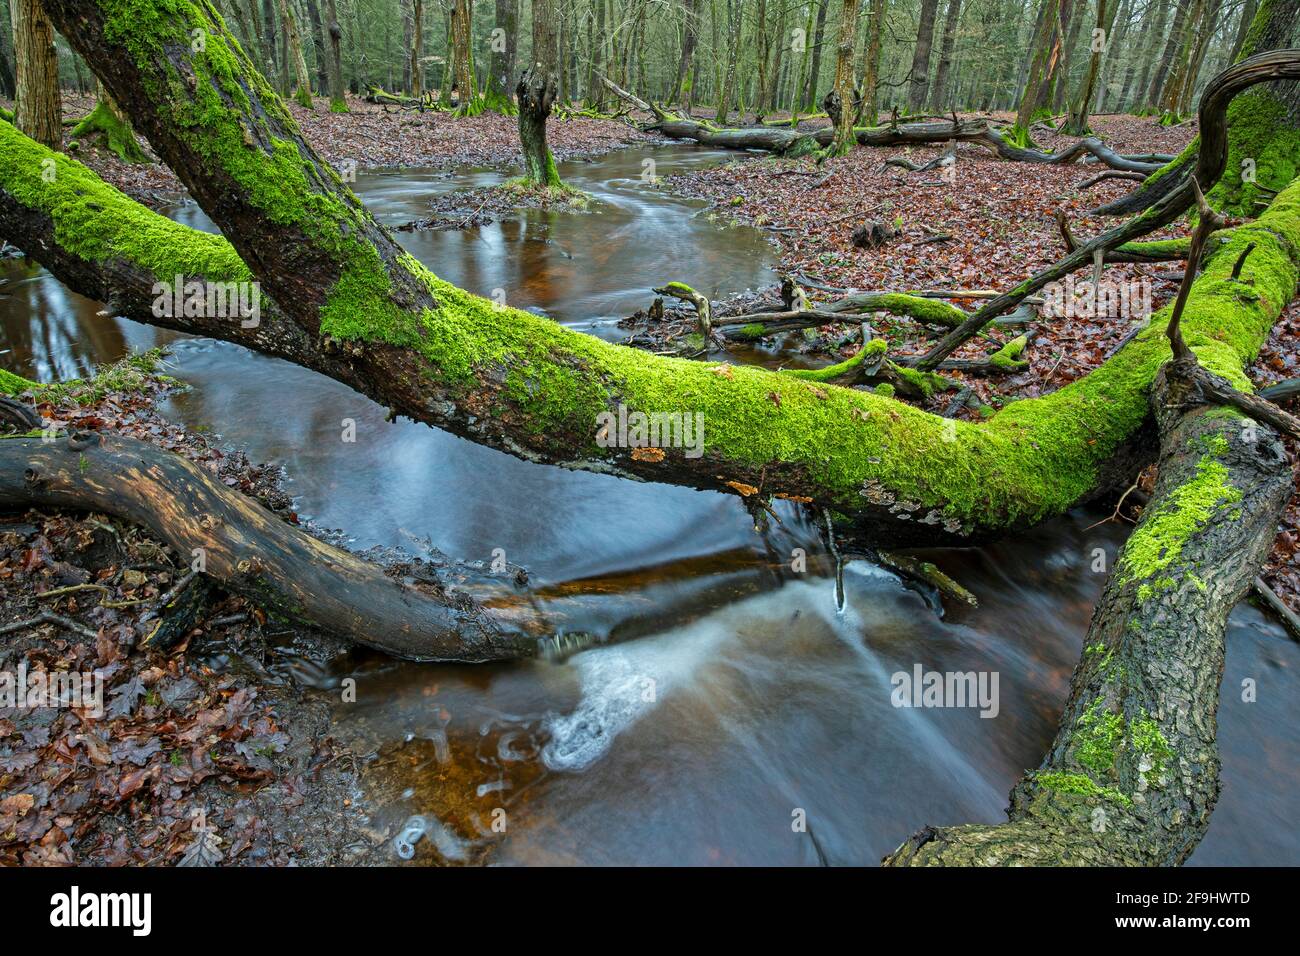 Stream in a deciduous forest. Schierenwald, Steinburg, Schleswig-Holstein, Germany Stock Photo